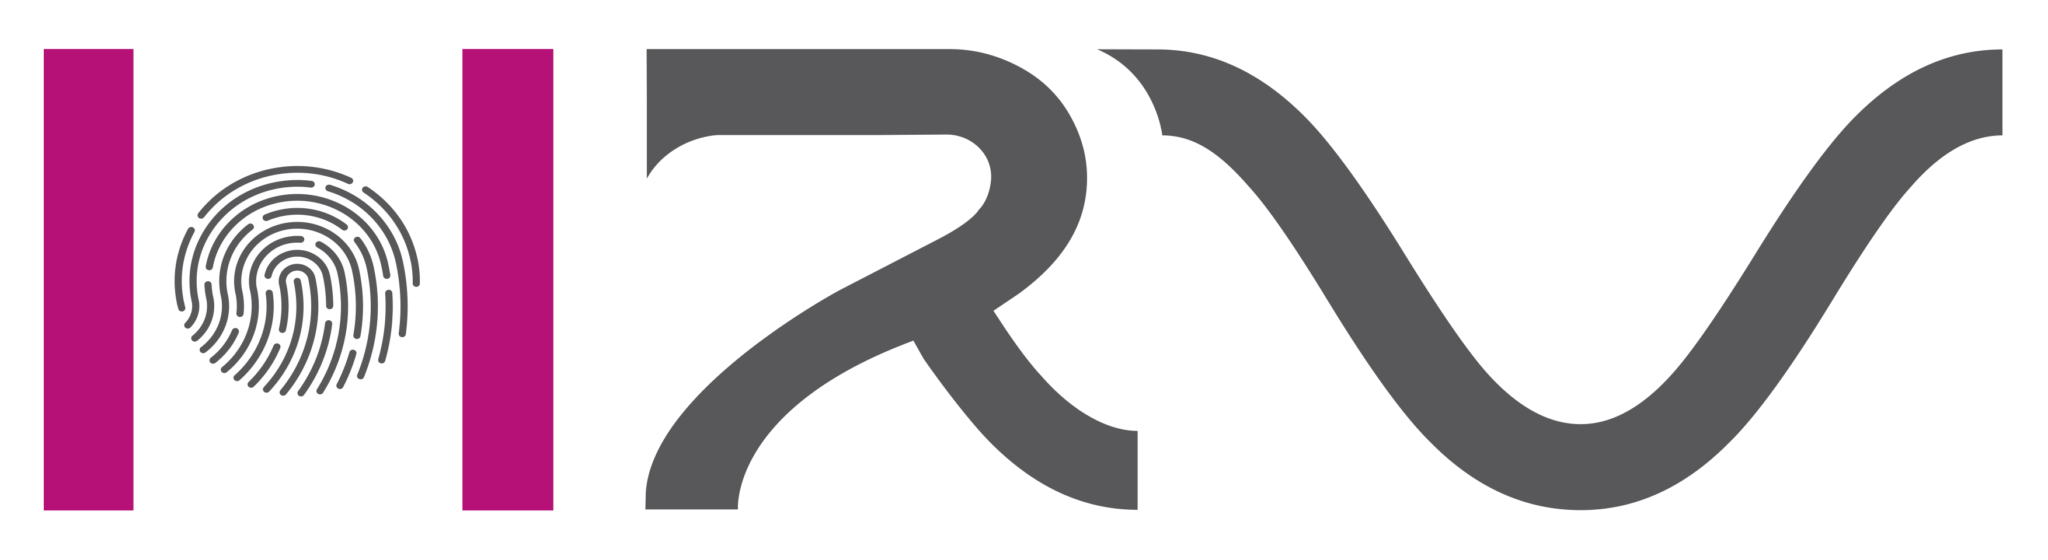 logo HRV